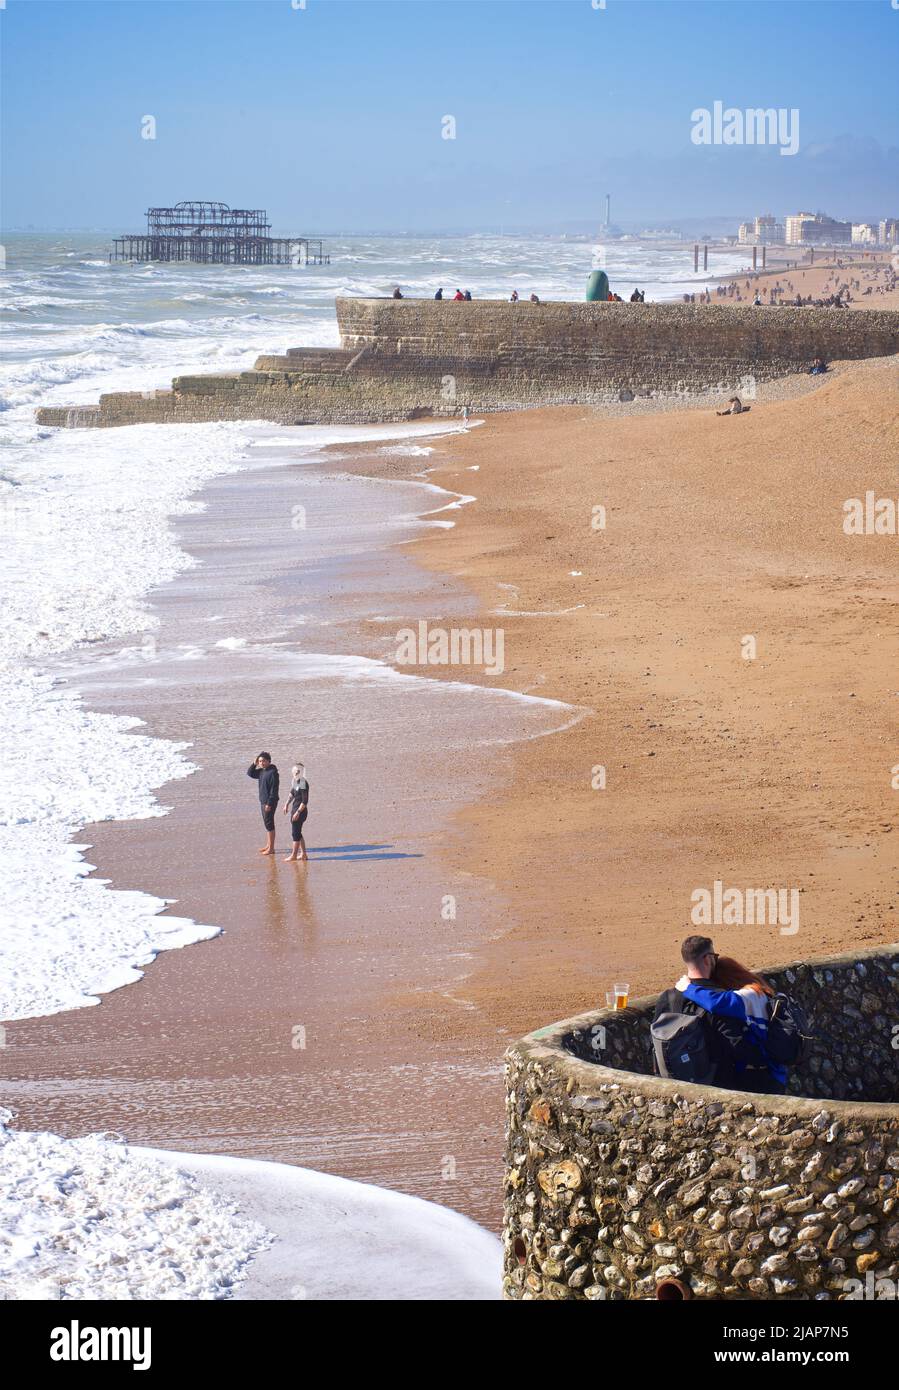 La plage de Brighton et les vestiges de la jetée ouest au-delà lors d'une journée ensoleillée de mars. Les gens sur la groyne et la plage au-delà. Brighton, Brighton & Hove, East Sussex, Angleterre, Royaume-Uni Banque D'Images